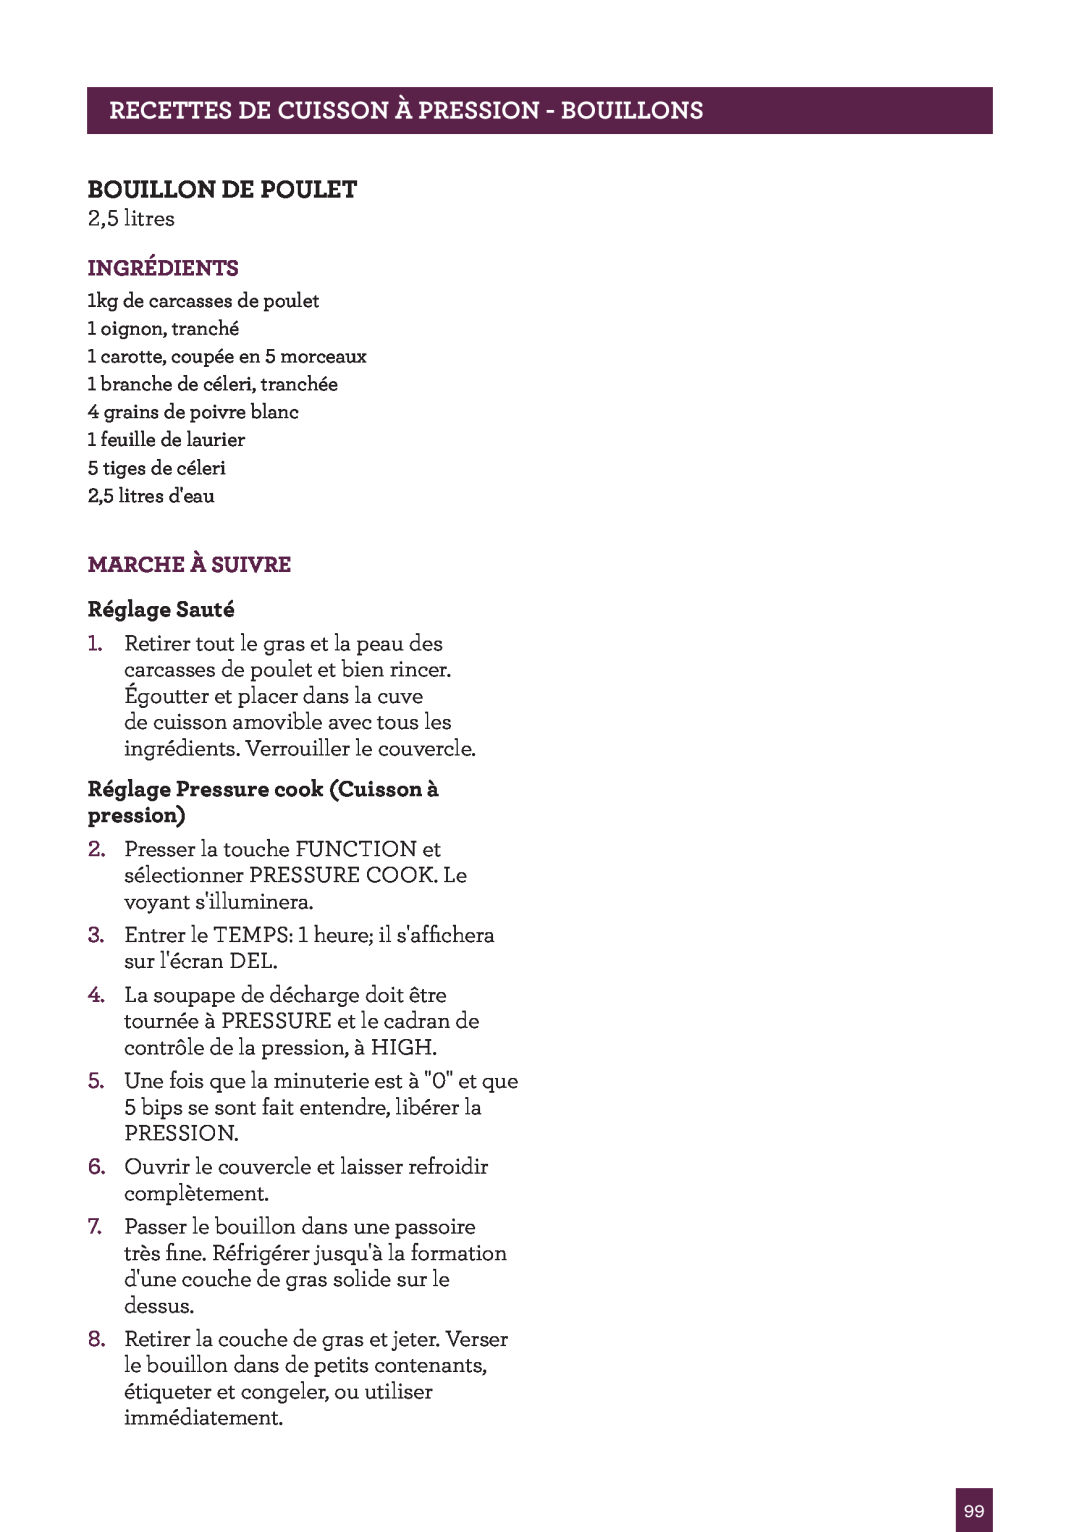 Breville BPR600XL Issue - A12 manual Pagettesrec H Adercuisson..... À Pression - Bouillons, Bouillon De Poulet, Ingrédients 